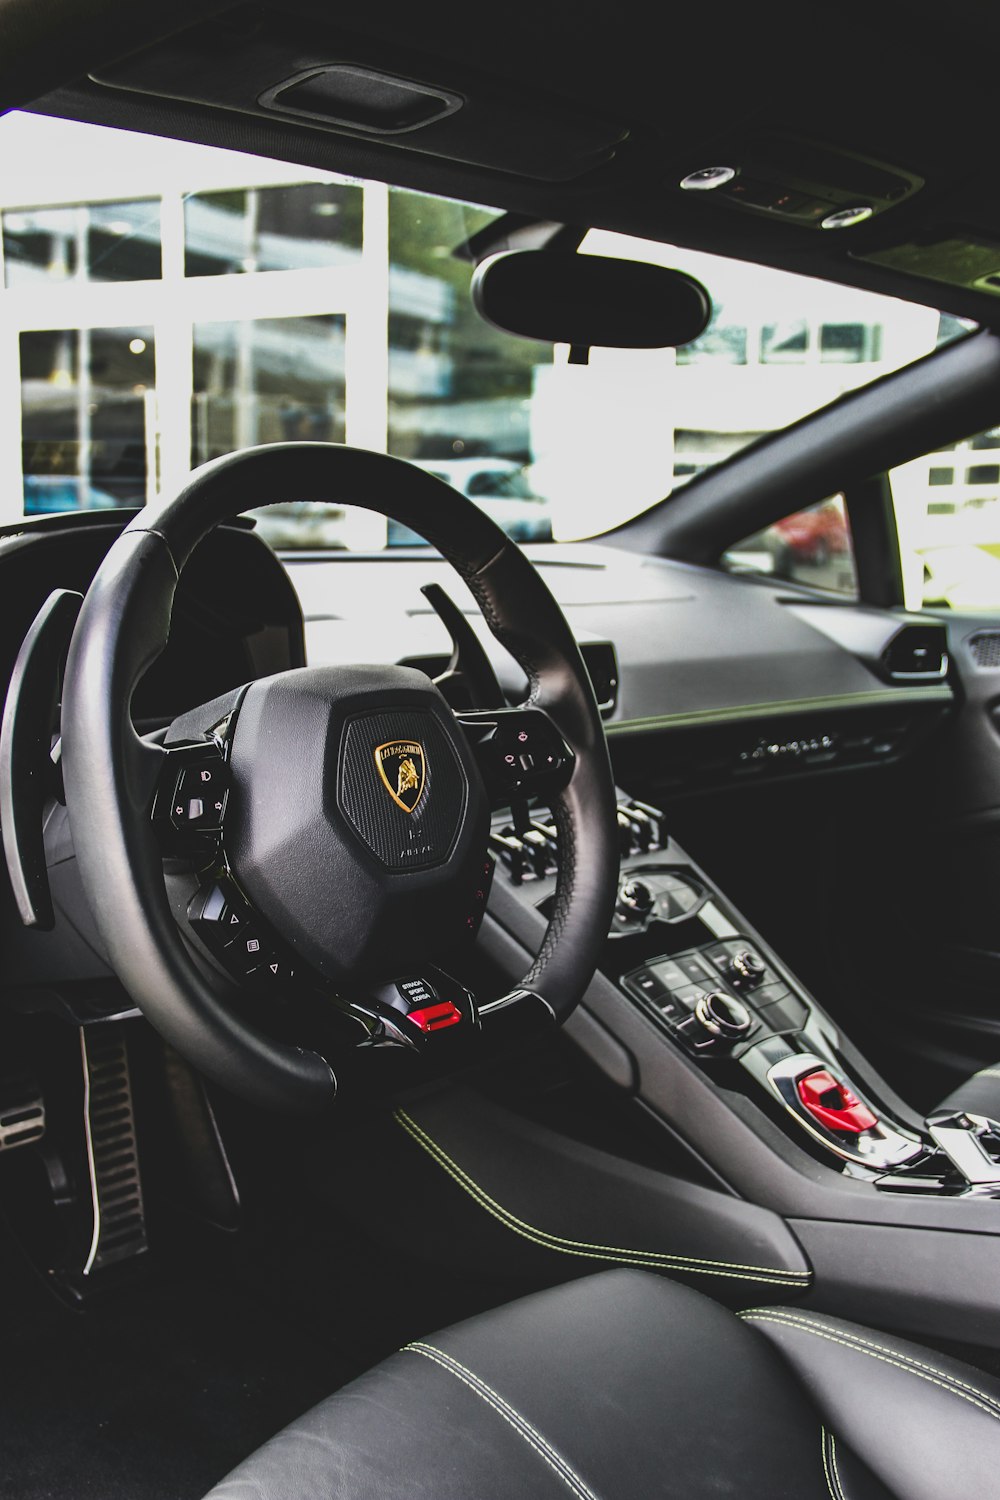 Lamborghini Interior Pictures | Download Free Images on Unsplash